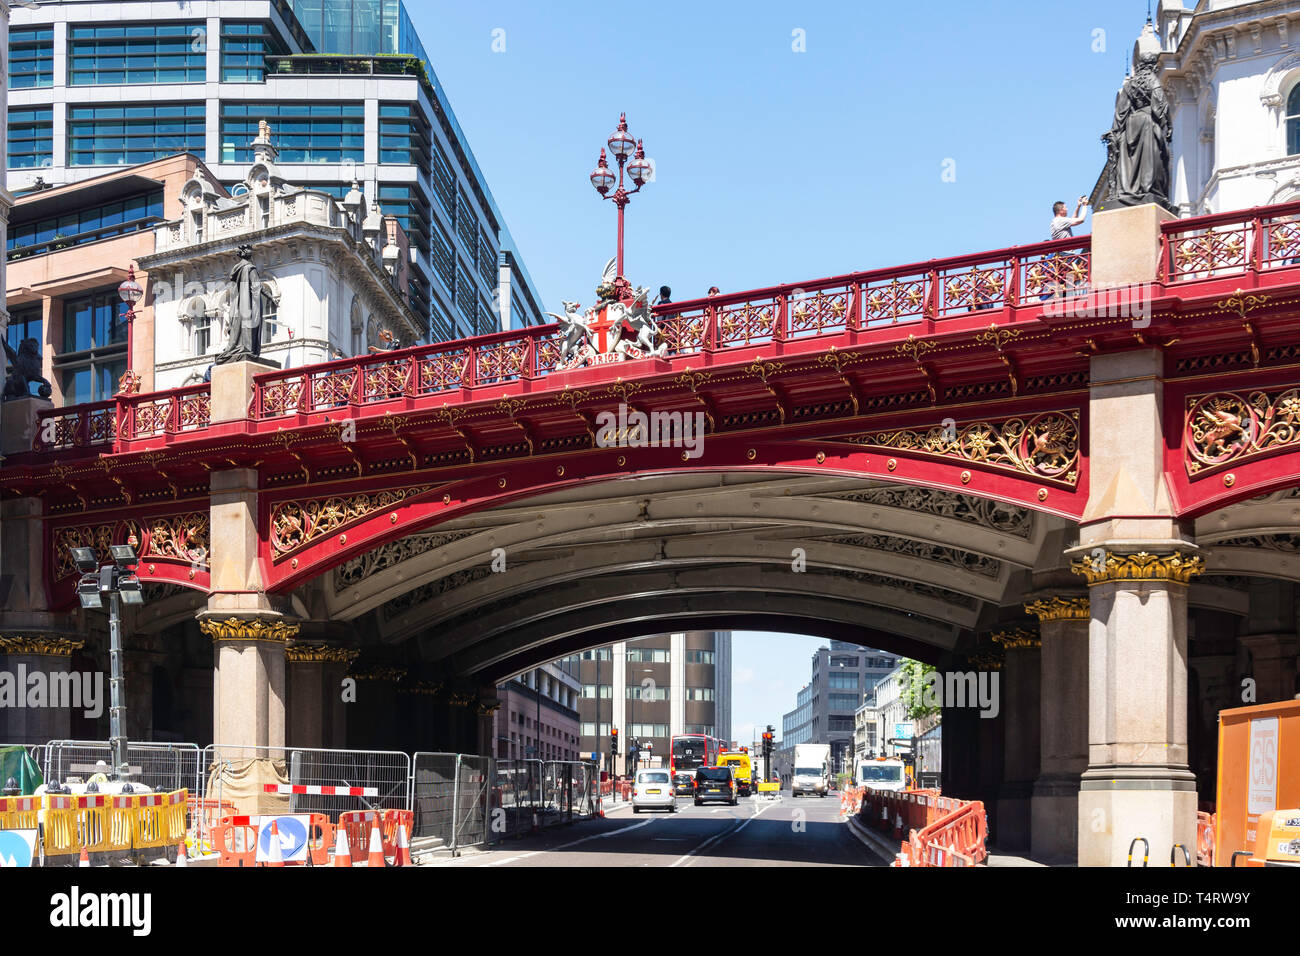 Pont routier de HOLBORN VIADUCT Farrington Street, Farringdon, Ville de London, Greater London, Angleterre, Royaume-Uni Banque D'Images